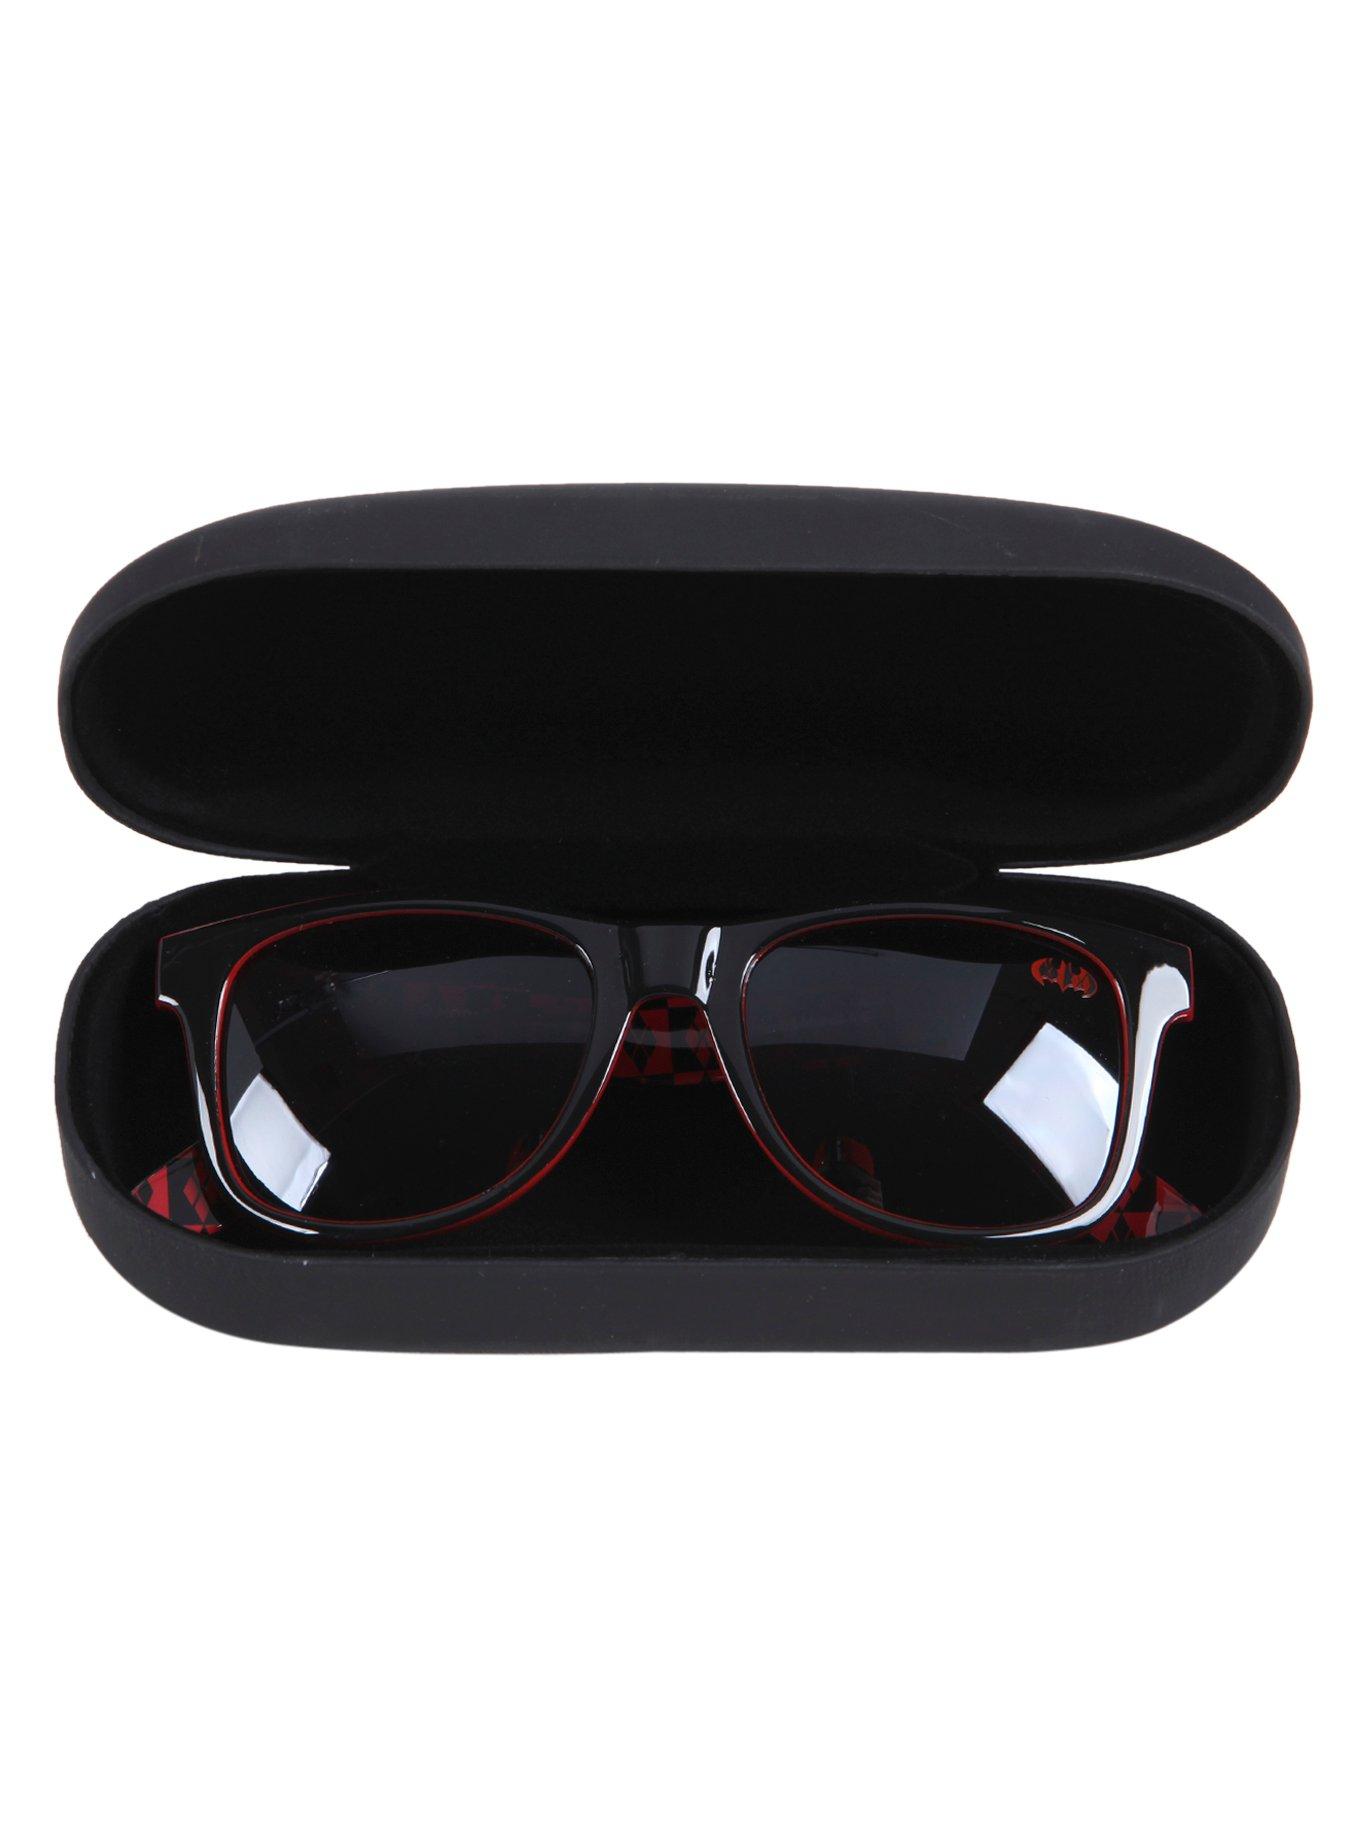 DC Comics Harley Quinn Sunglasses & Case Gift Set, , alternate